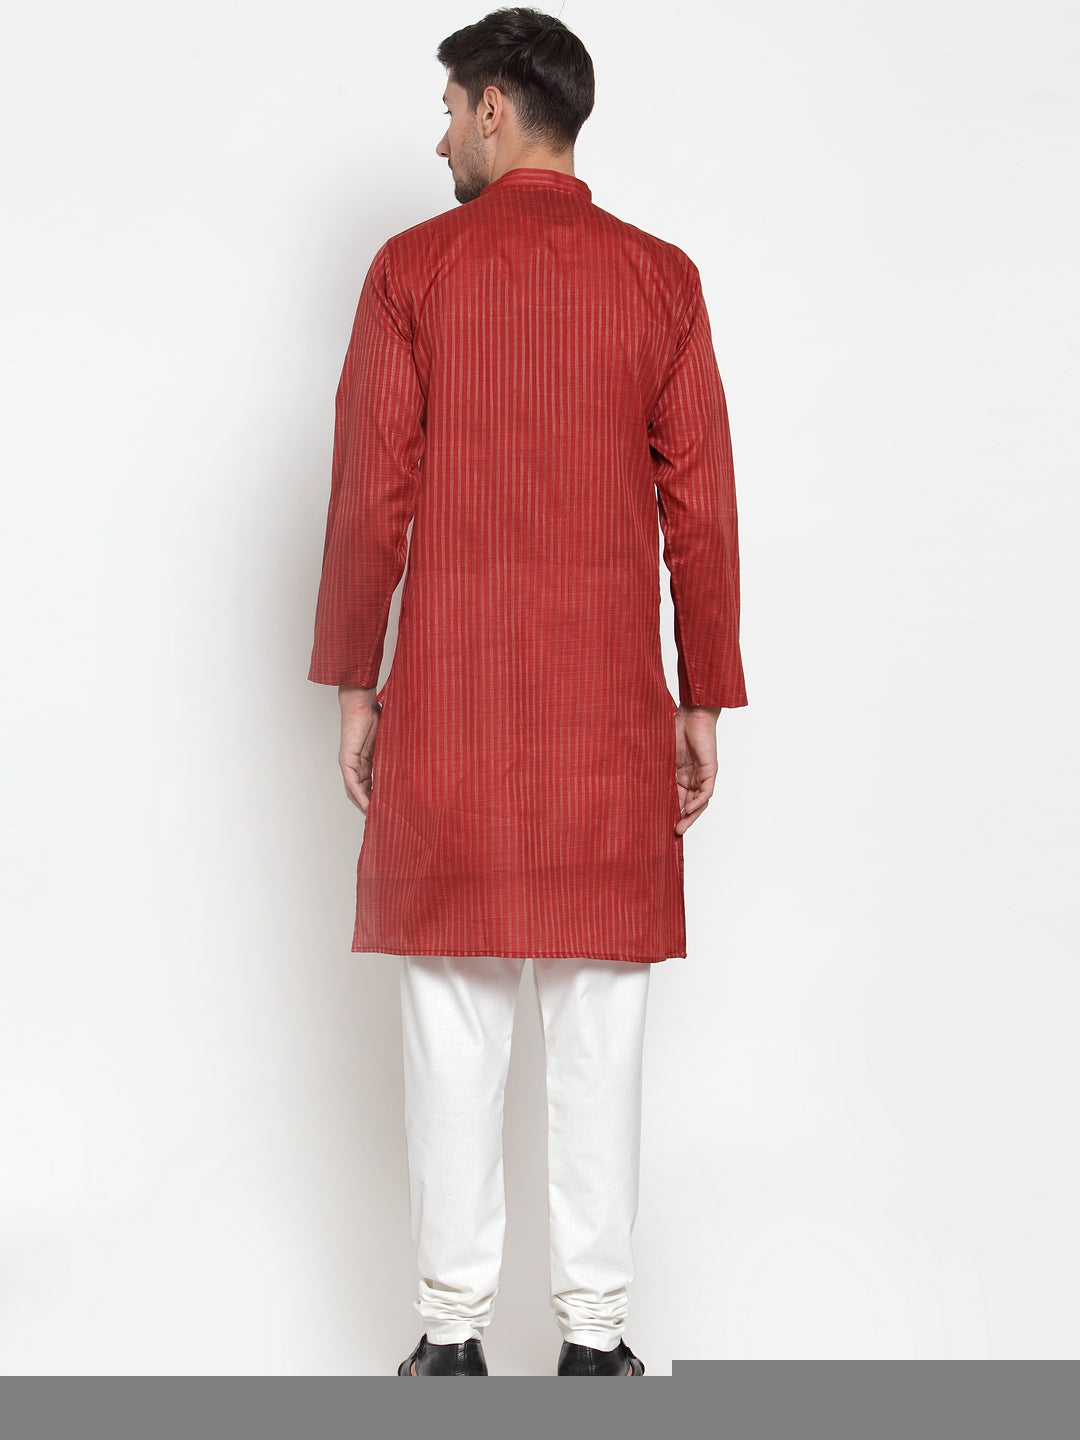 KLOTTHE Red Cotton Printed Kurta With Pyjama